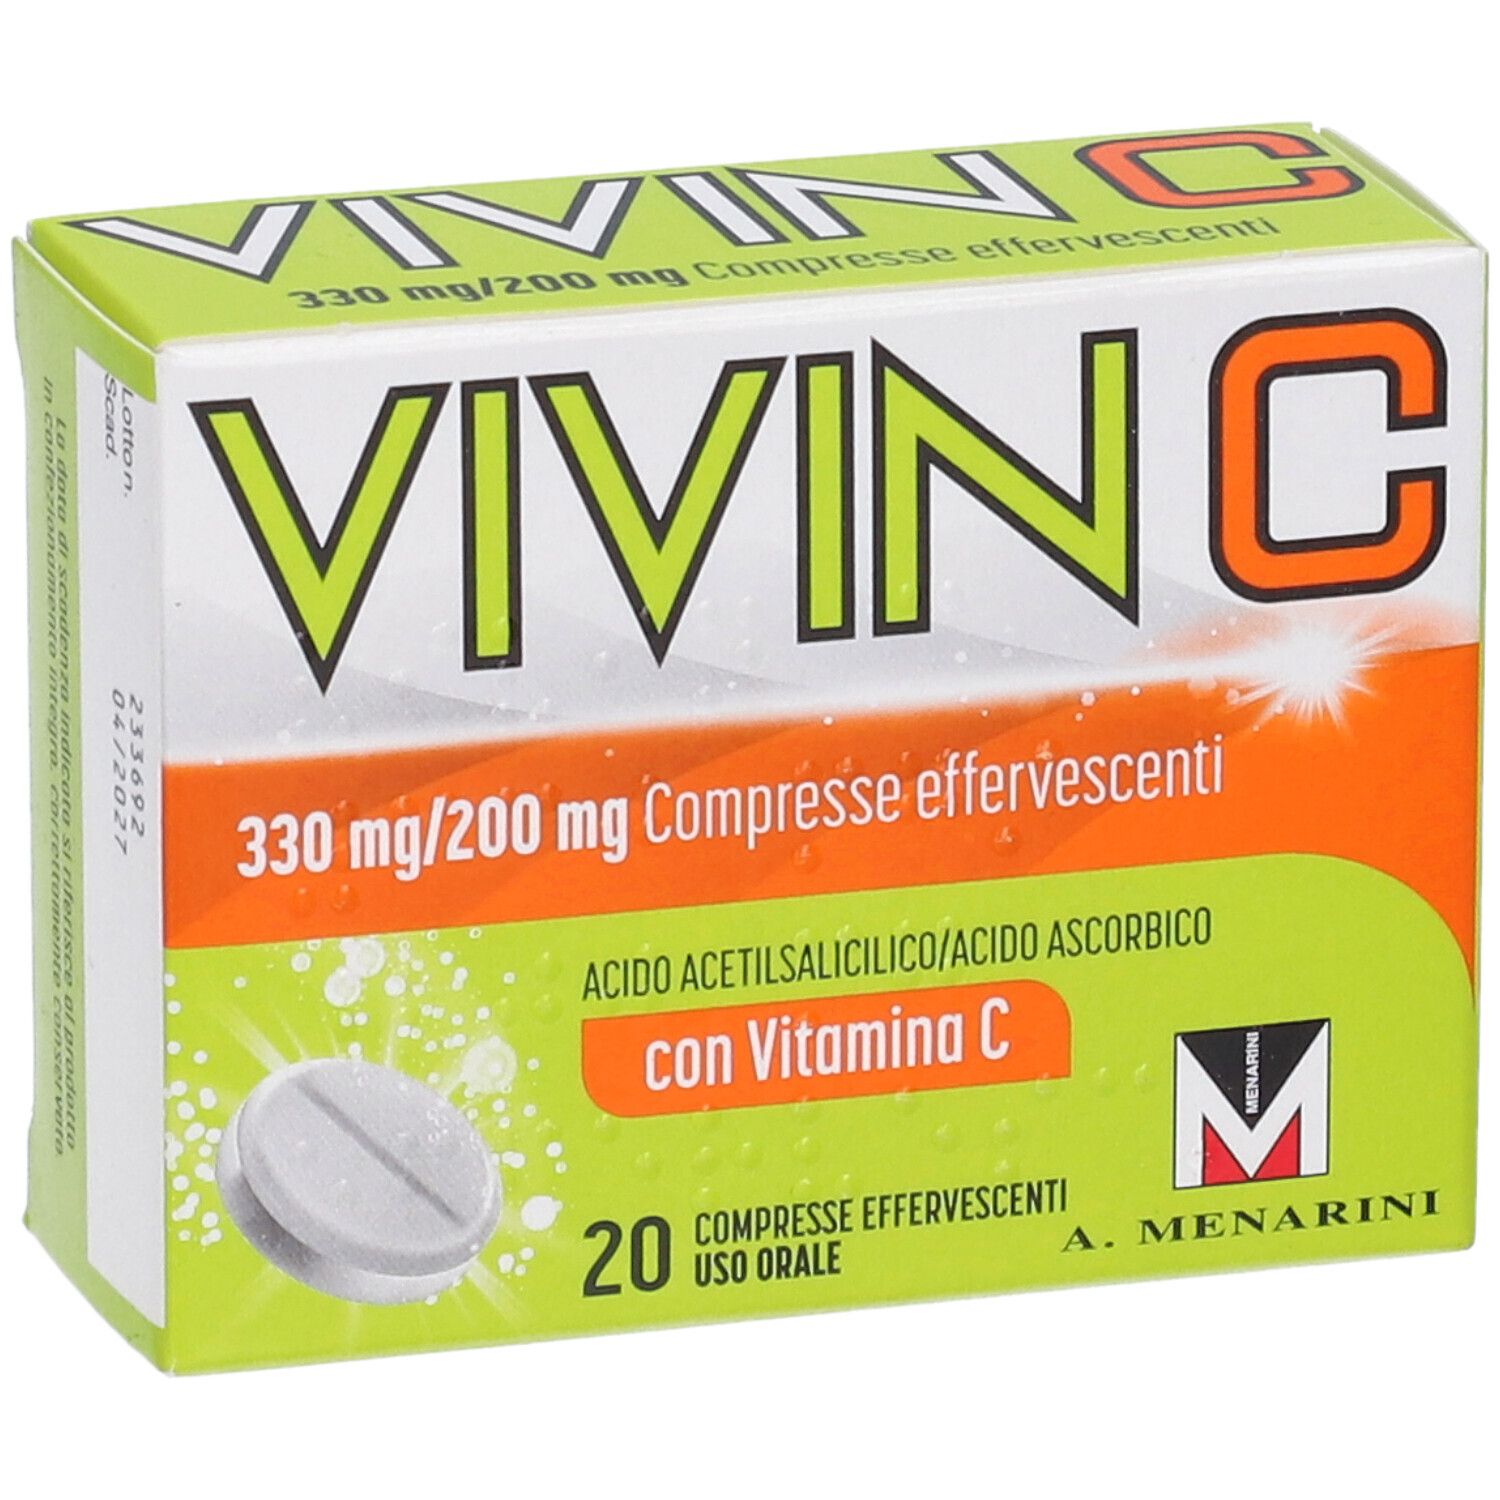 Vivin C contro primi sintomi influenzali e raffreddore 20 compresse effervescenti, con Vit C